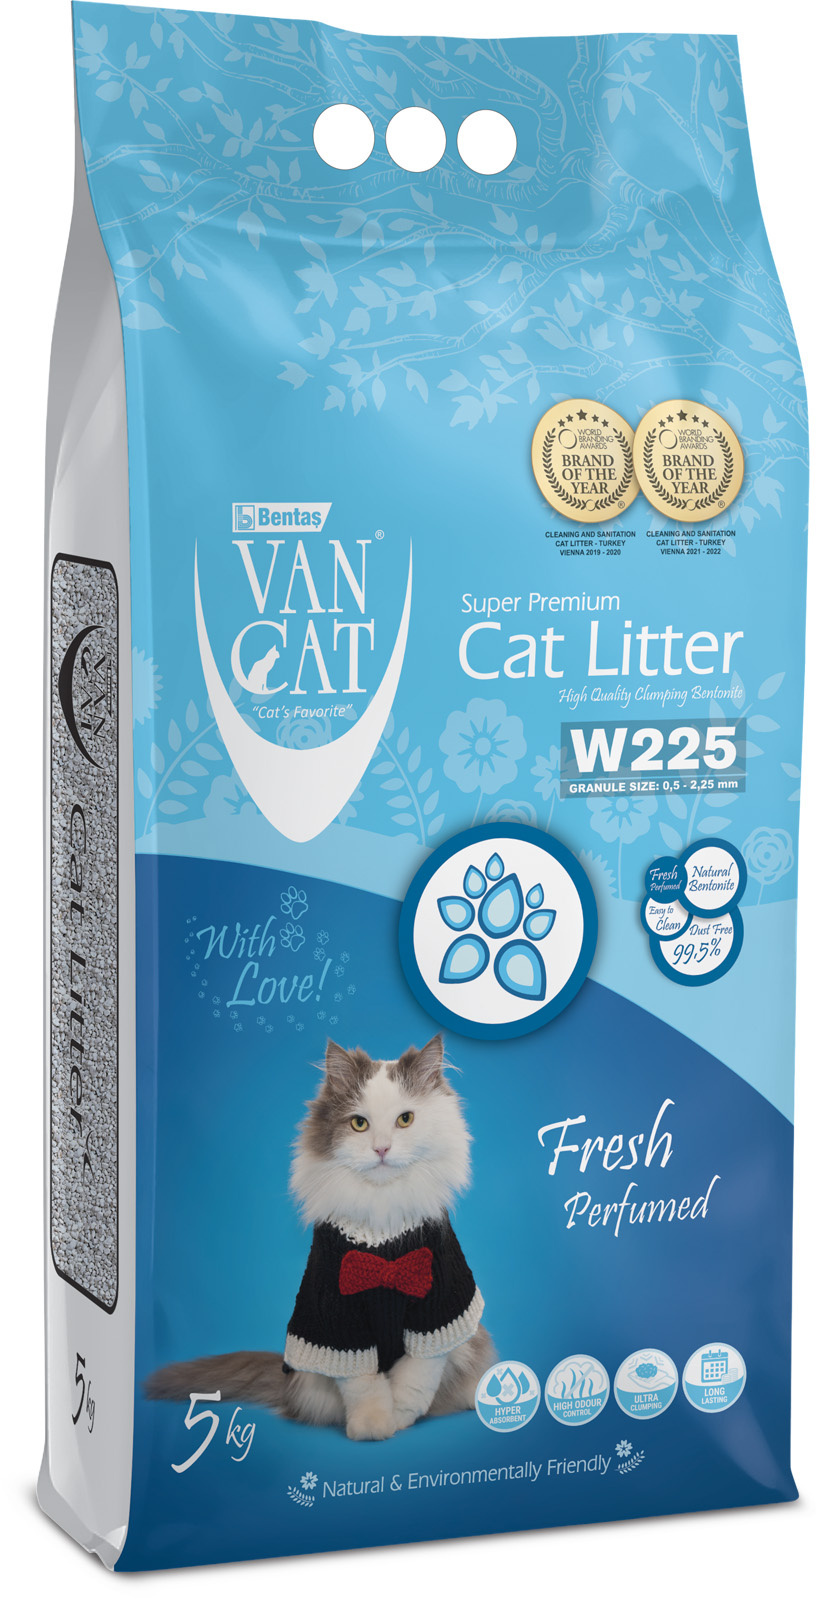 Van Cat Van Cat комкующийся наполнитель без пыли с ароматом весенней свежести, пакет (5 кг) van cat van cat комкующийся наполнитель 100% натуральный без пыли пакет 5 кг